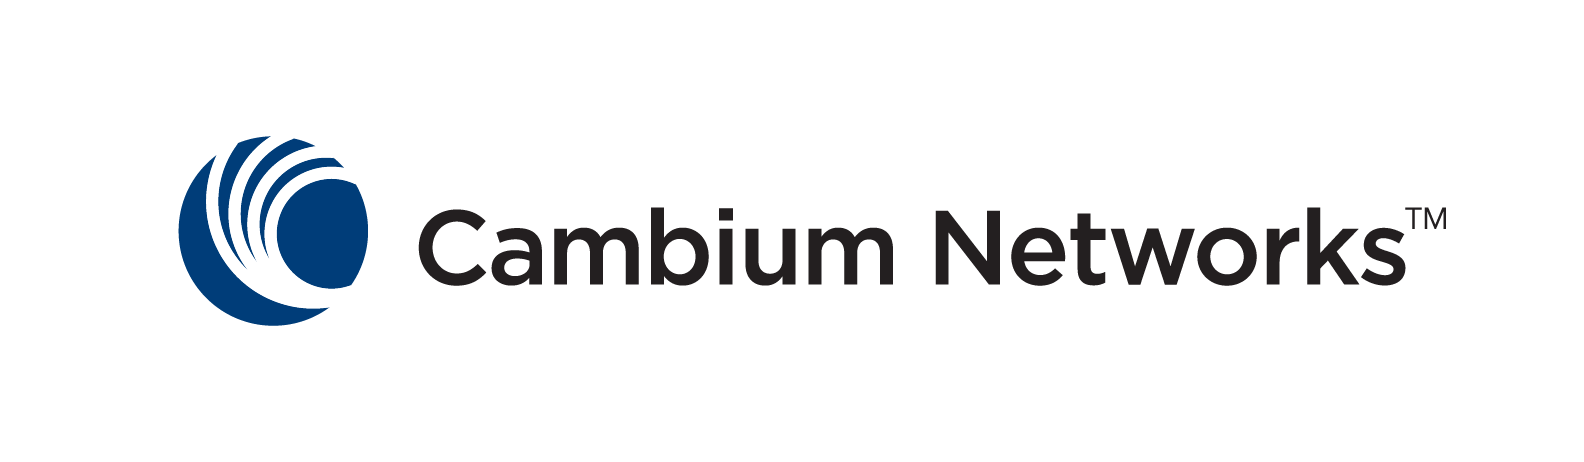 Cambium Networks es un proveedor de infraestructura inalámbrica que ofrece conexión inalámbrica fija y Wi-Fi a empresas y proveedores de servicios de banda ancha para proporcionar acceso a Internet. Es una empresa estadounidense de infraestructura de telecomunicaciones que proporciona tecnología inalámbrica, incluido Enterprise WiFi, soluciones de conmutación, Internet de las cosas y banda ancha inalámbrica fija y Wi-Fi para empresas.